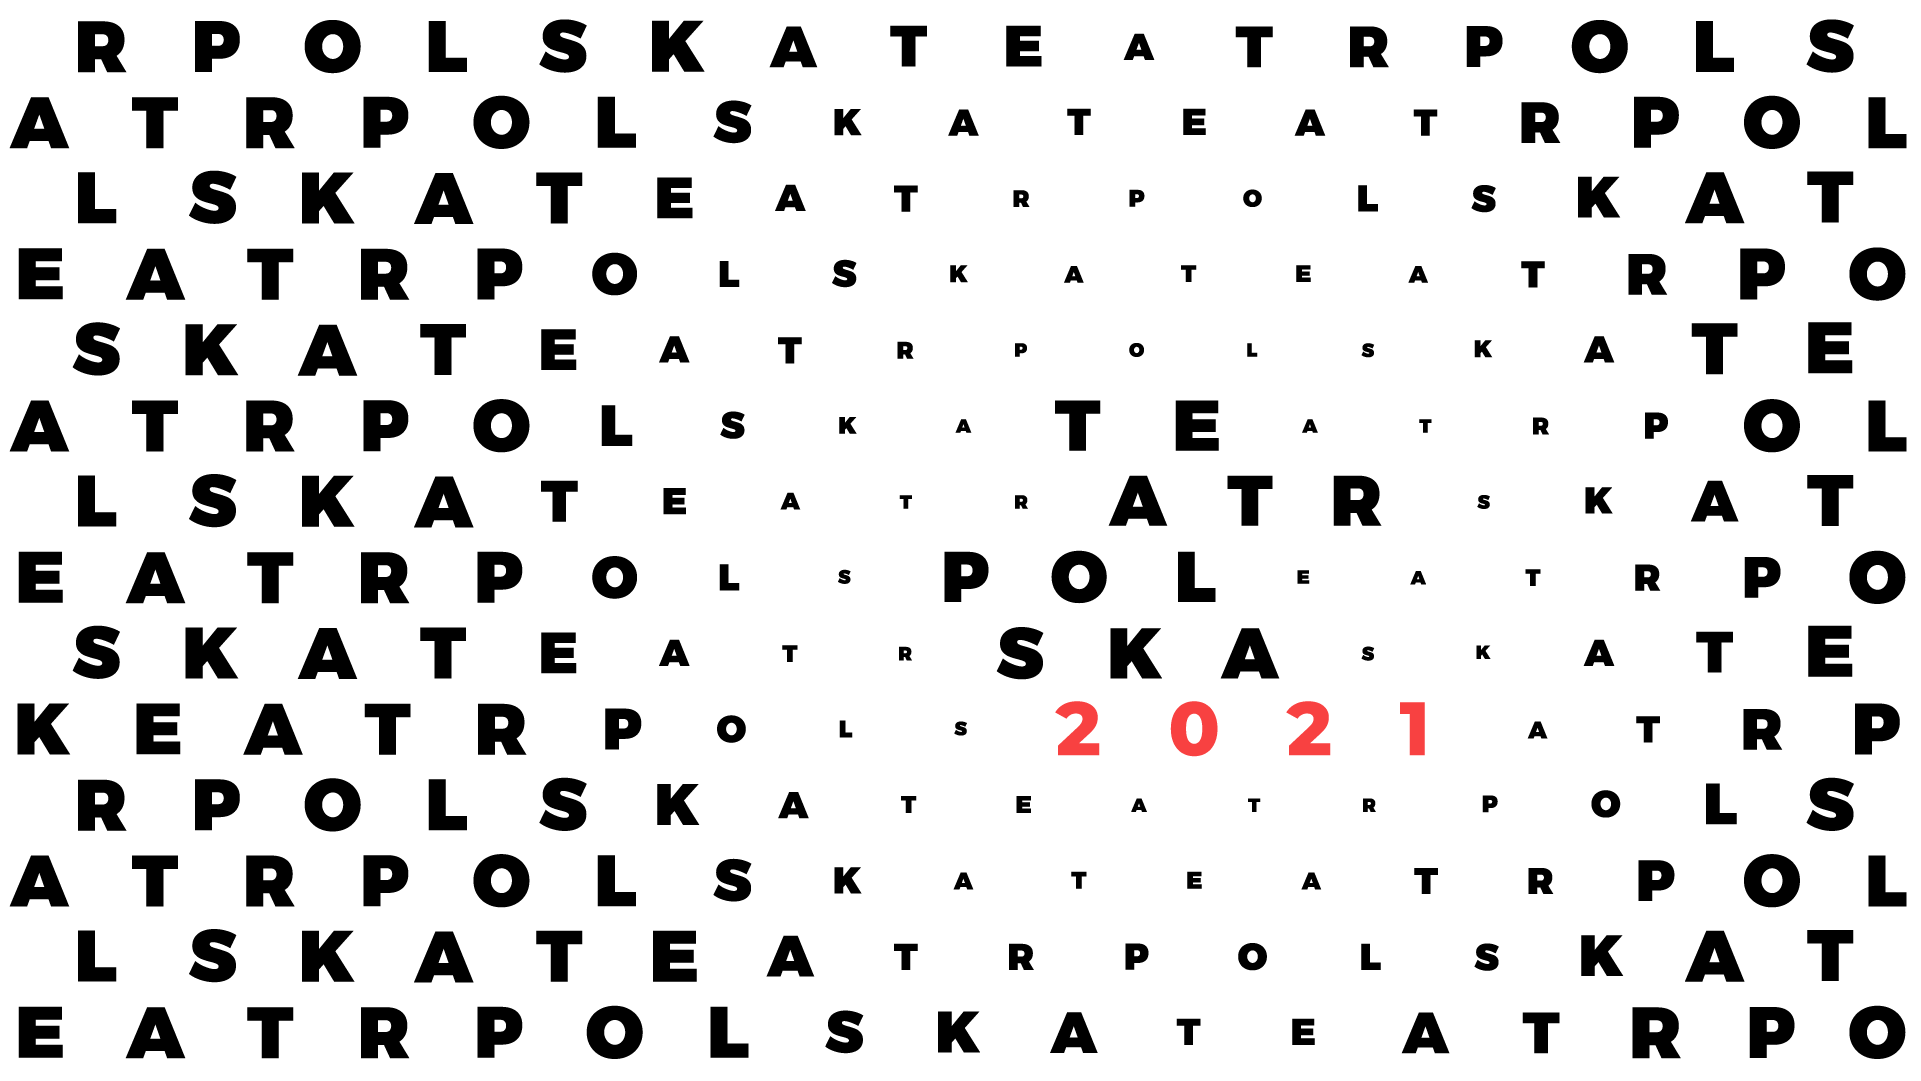 Logo programu Teatr Polska - czarne litery na białym tle, czerwona data 2021. 